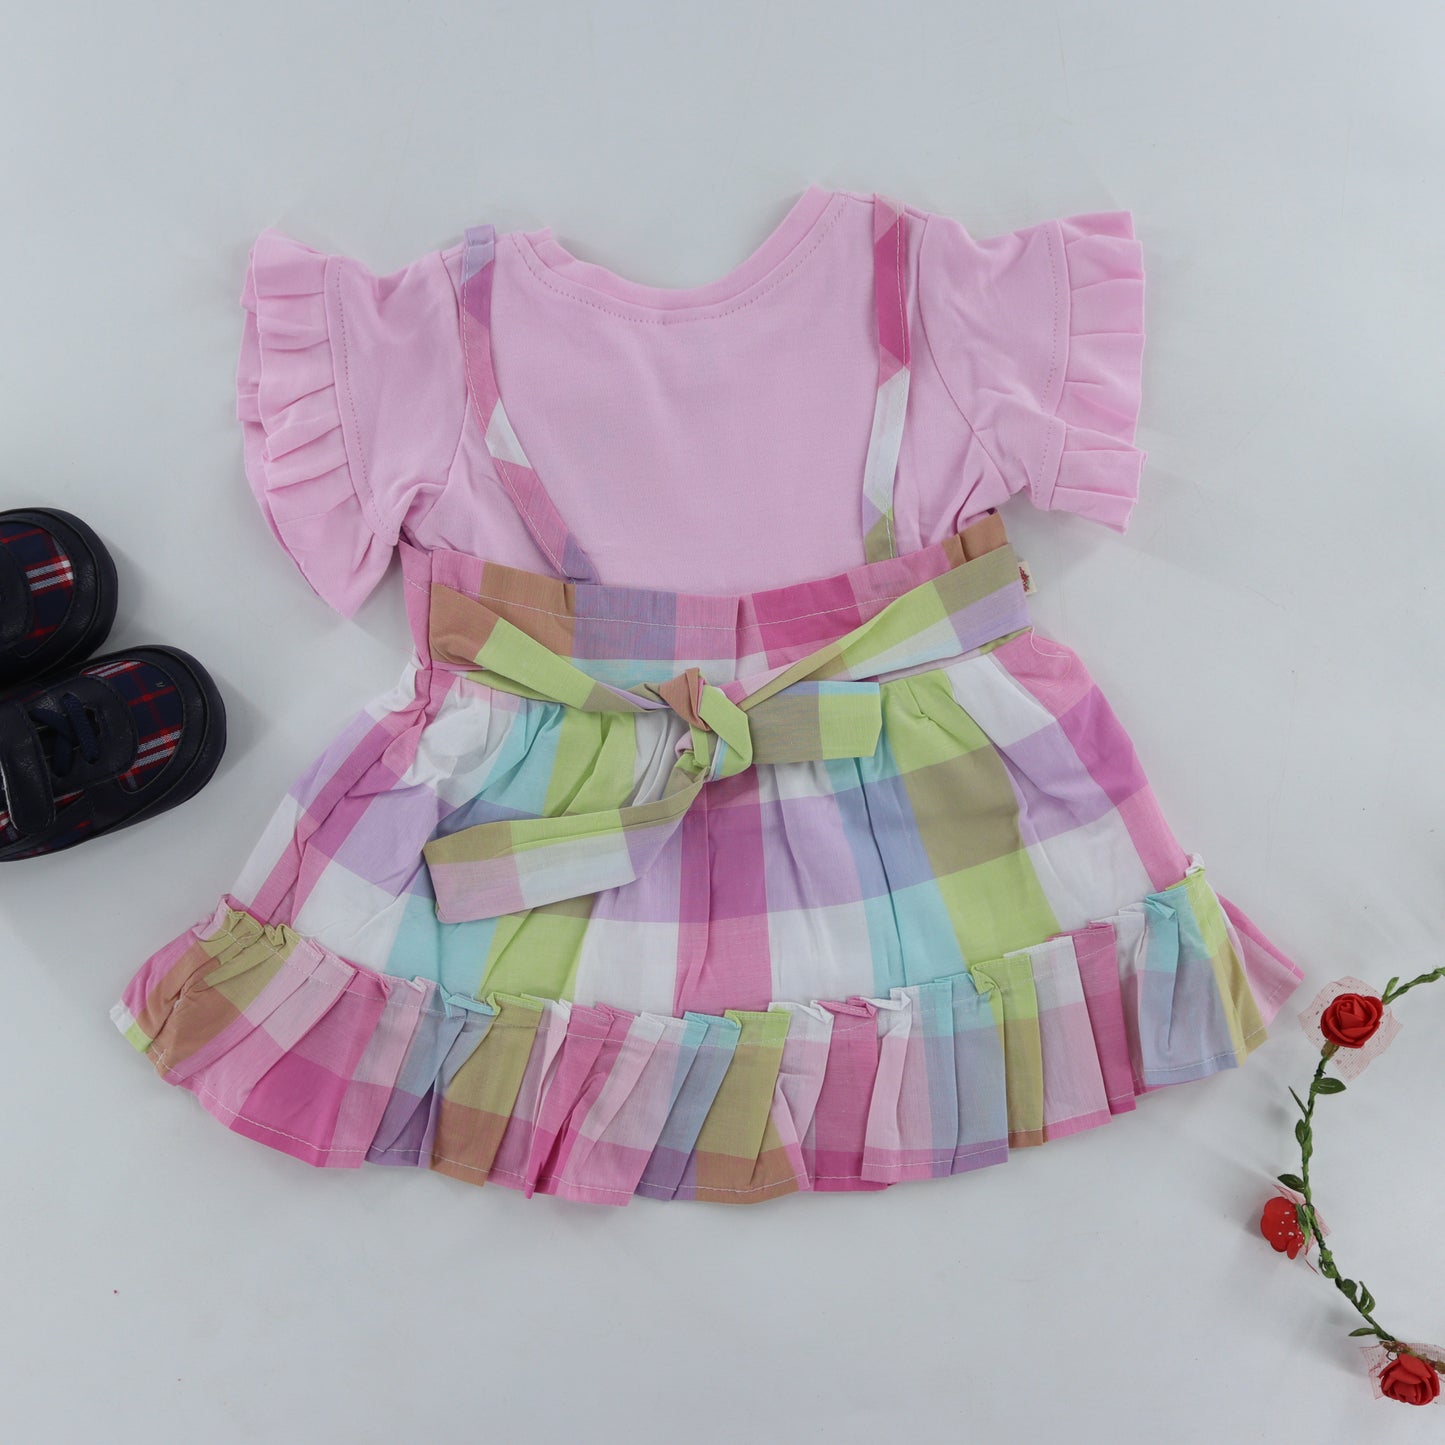 Littleista Girl Boho Girl Easter Toddler Colorful Summer Dress